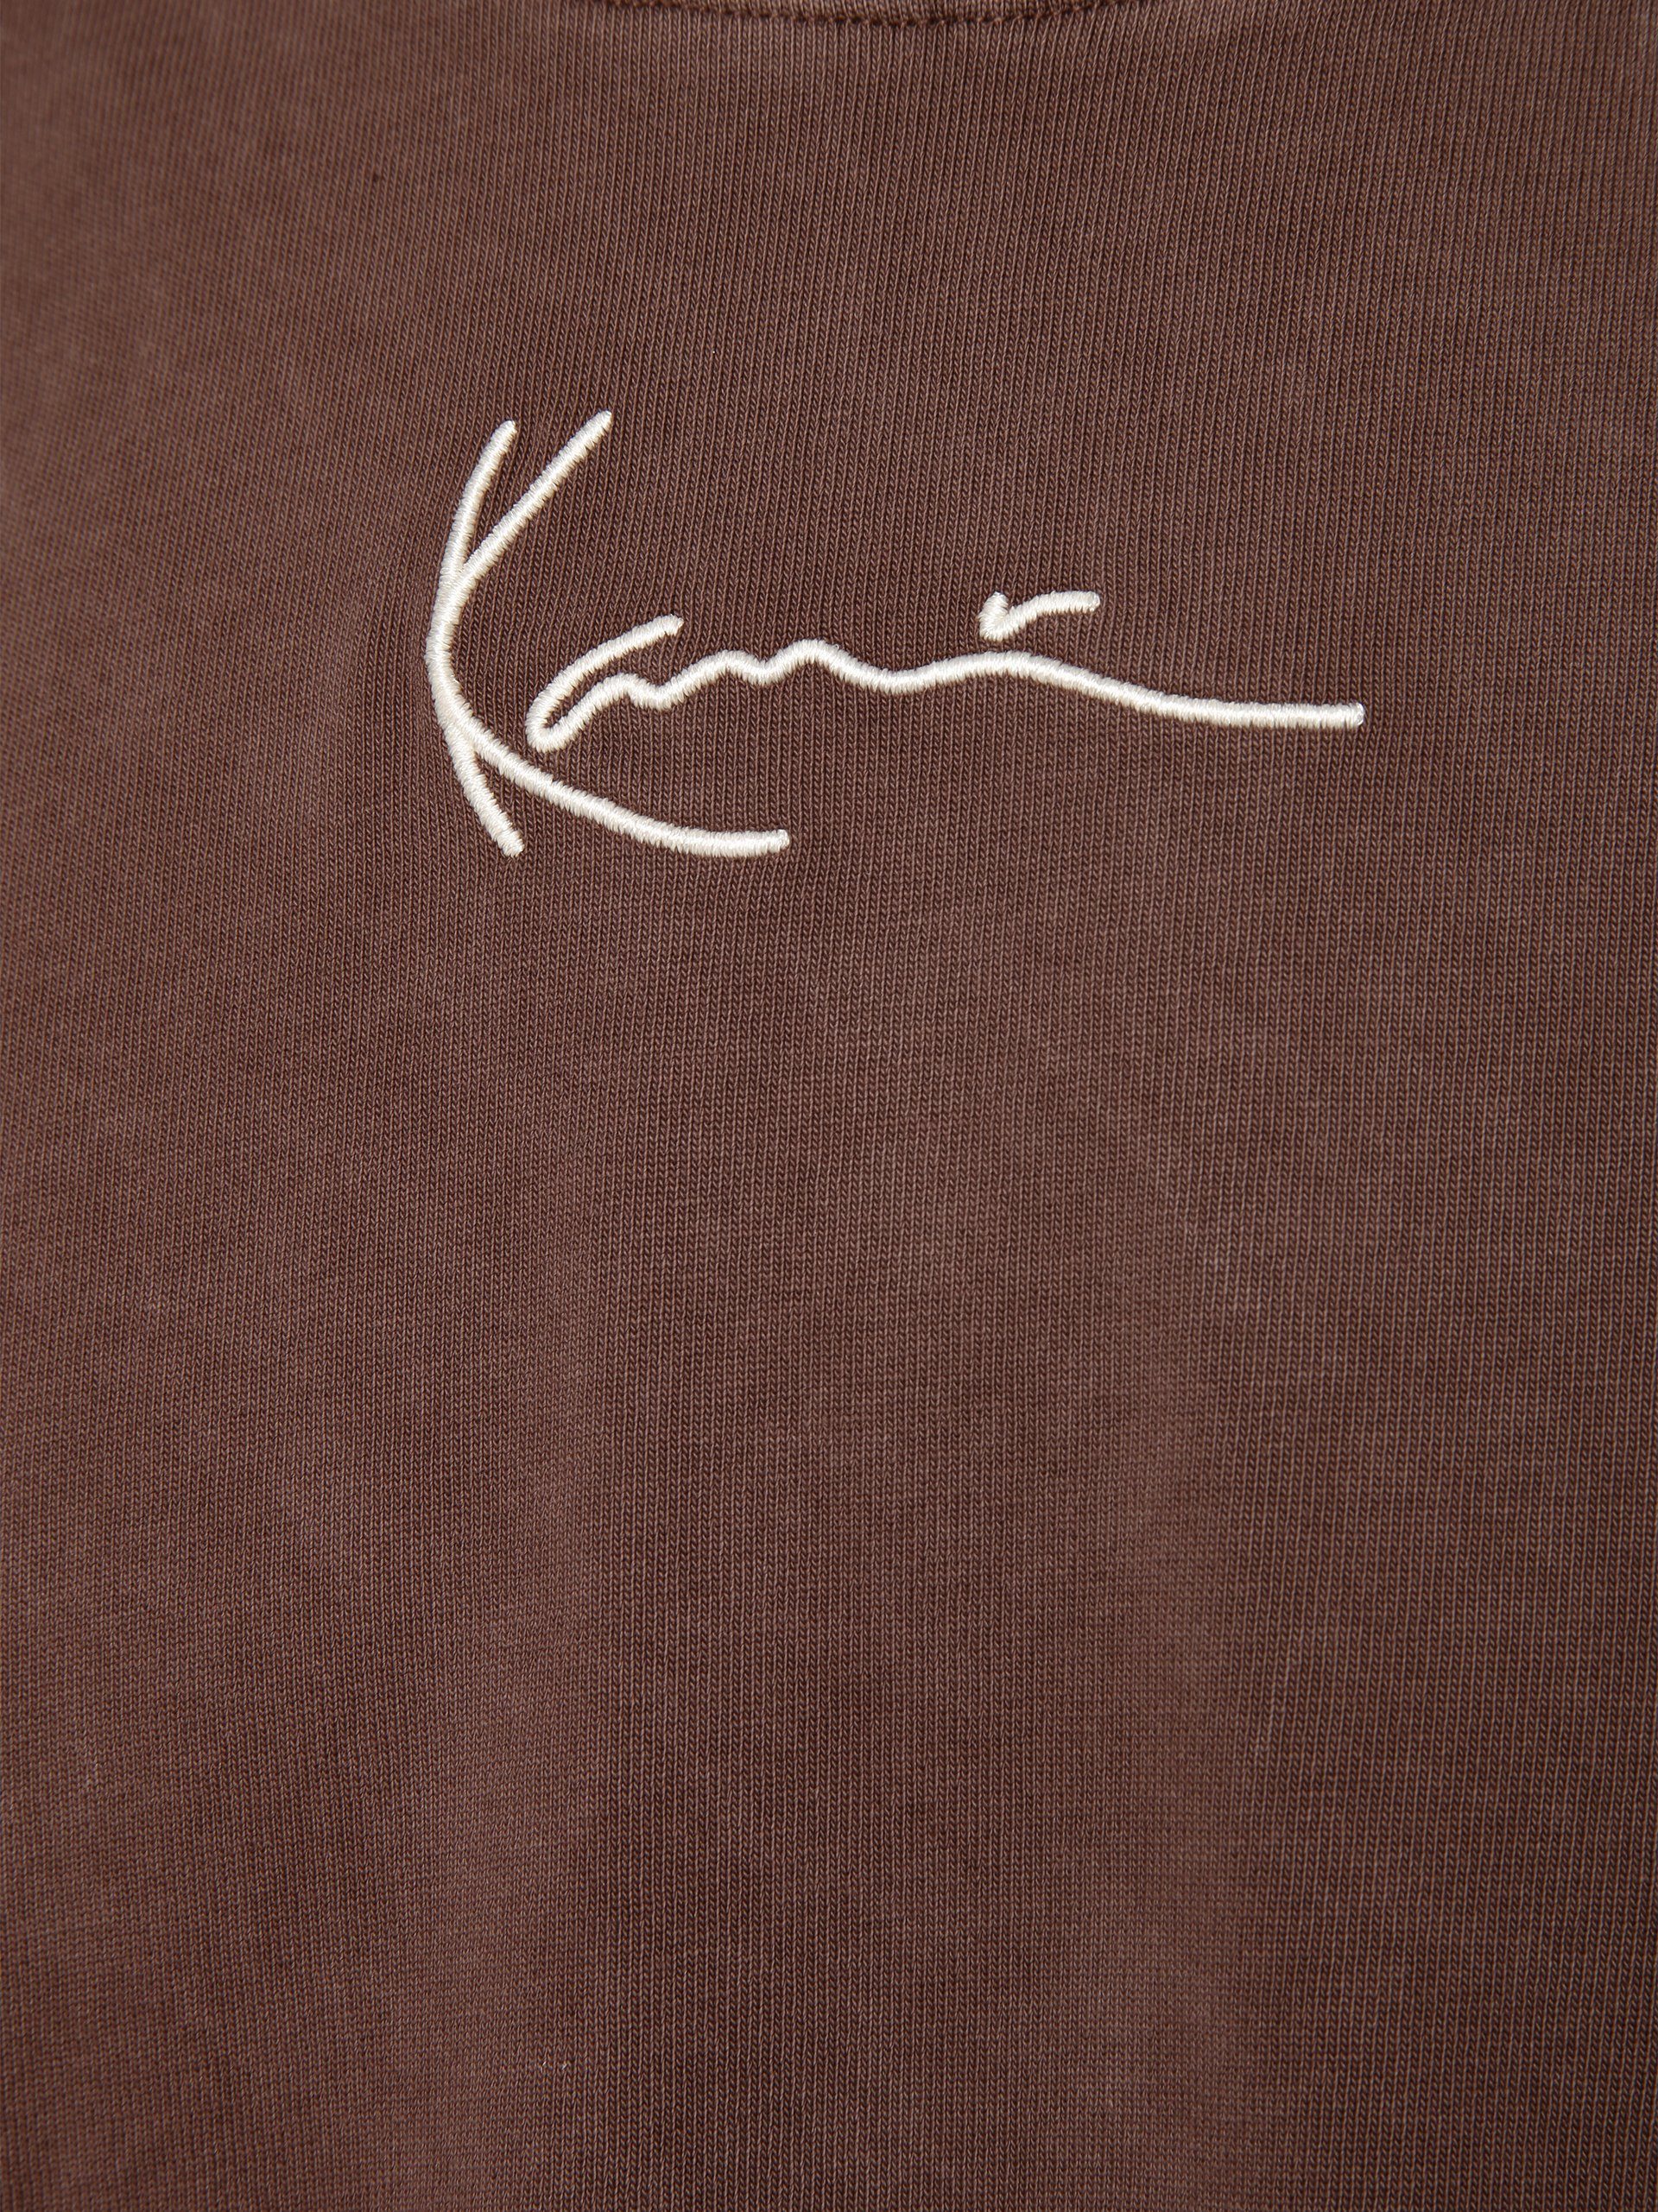 T-Shirt Kani Karl